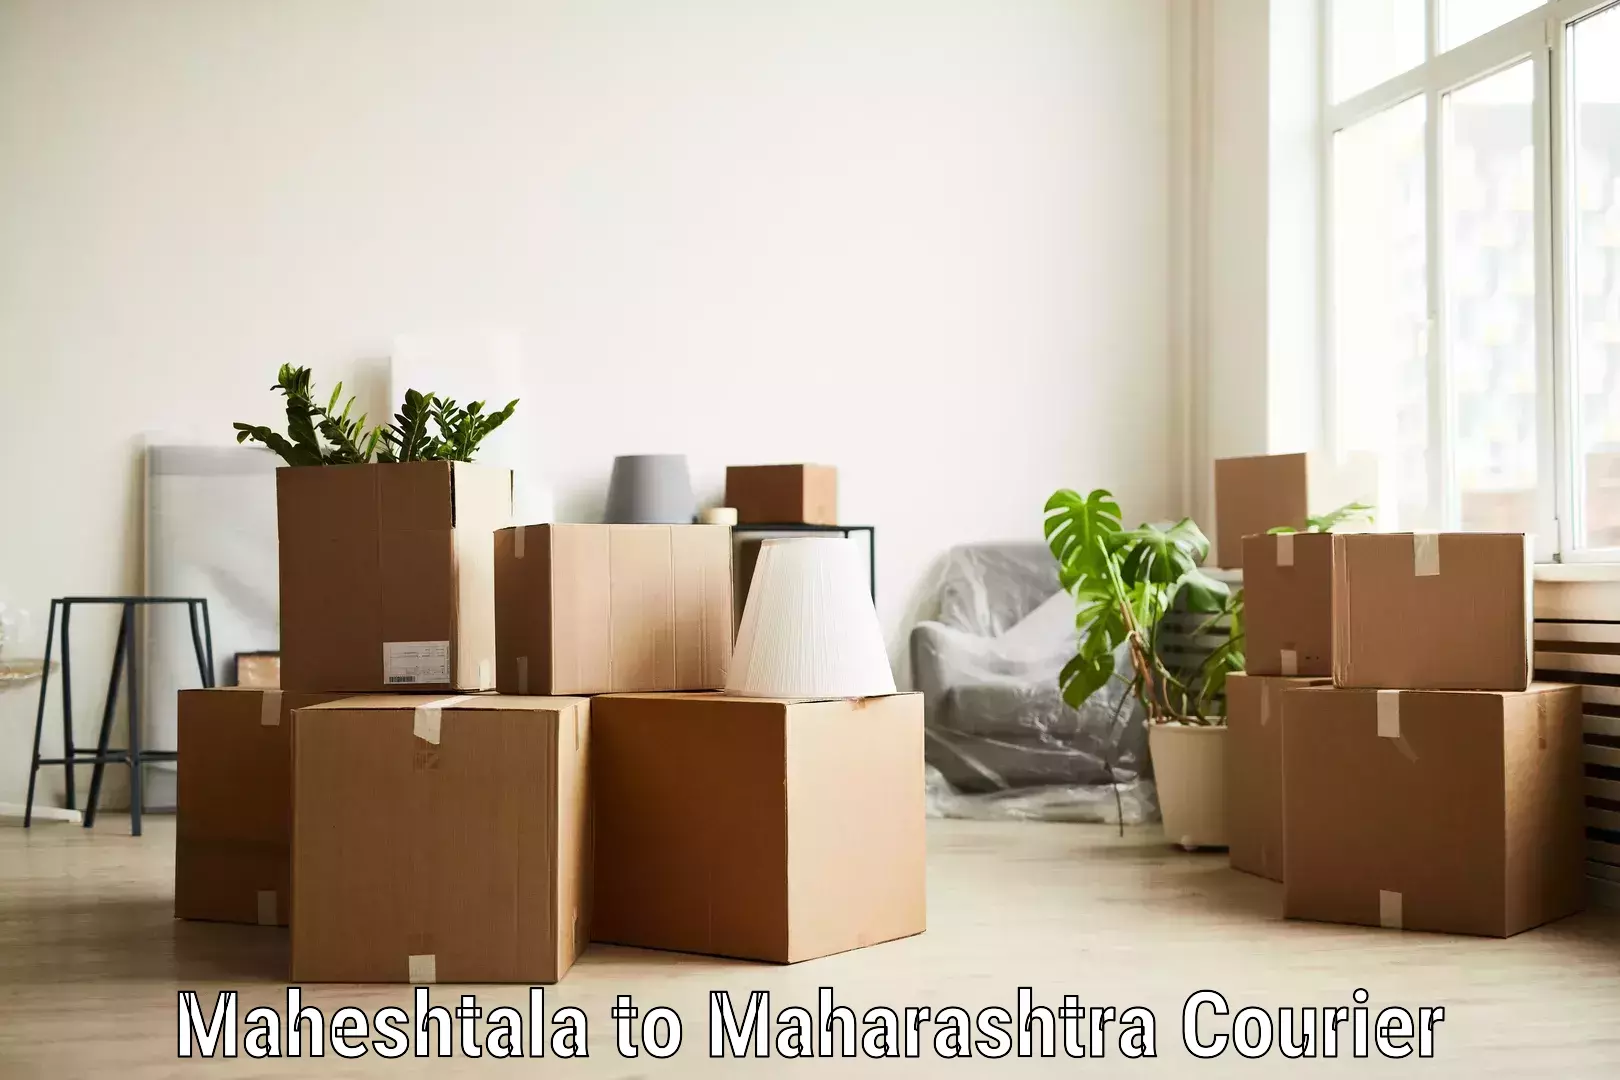 Small parcel delivery Maheshtala to Maharashtra